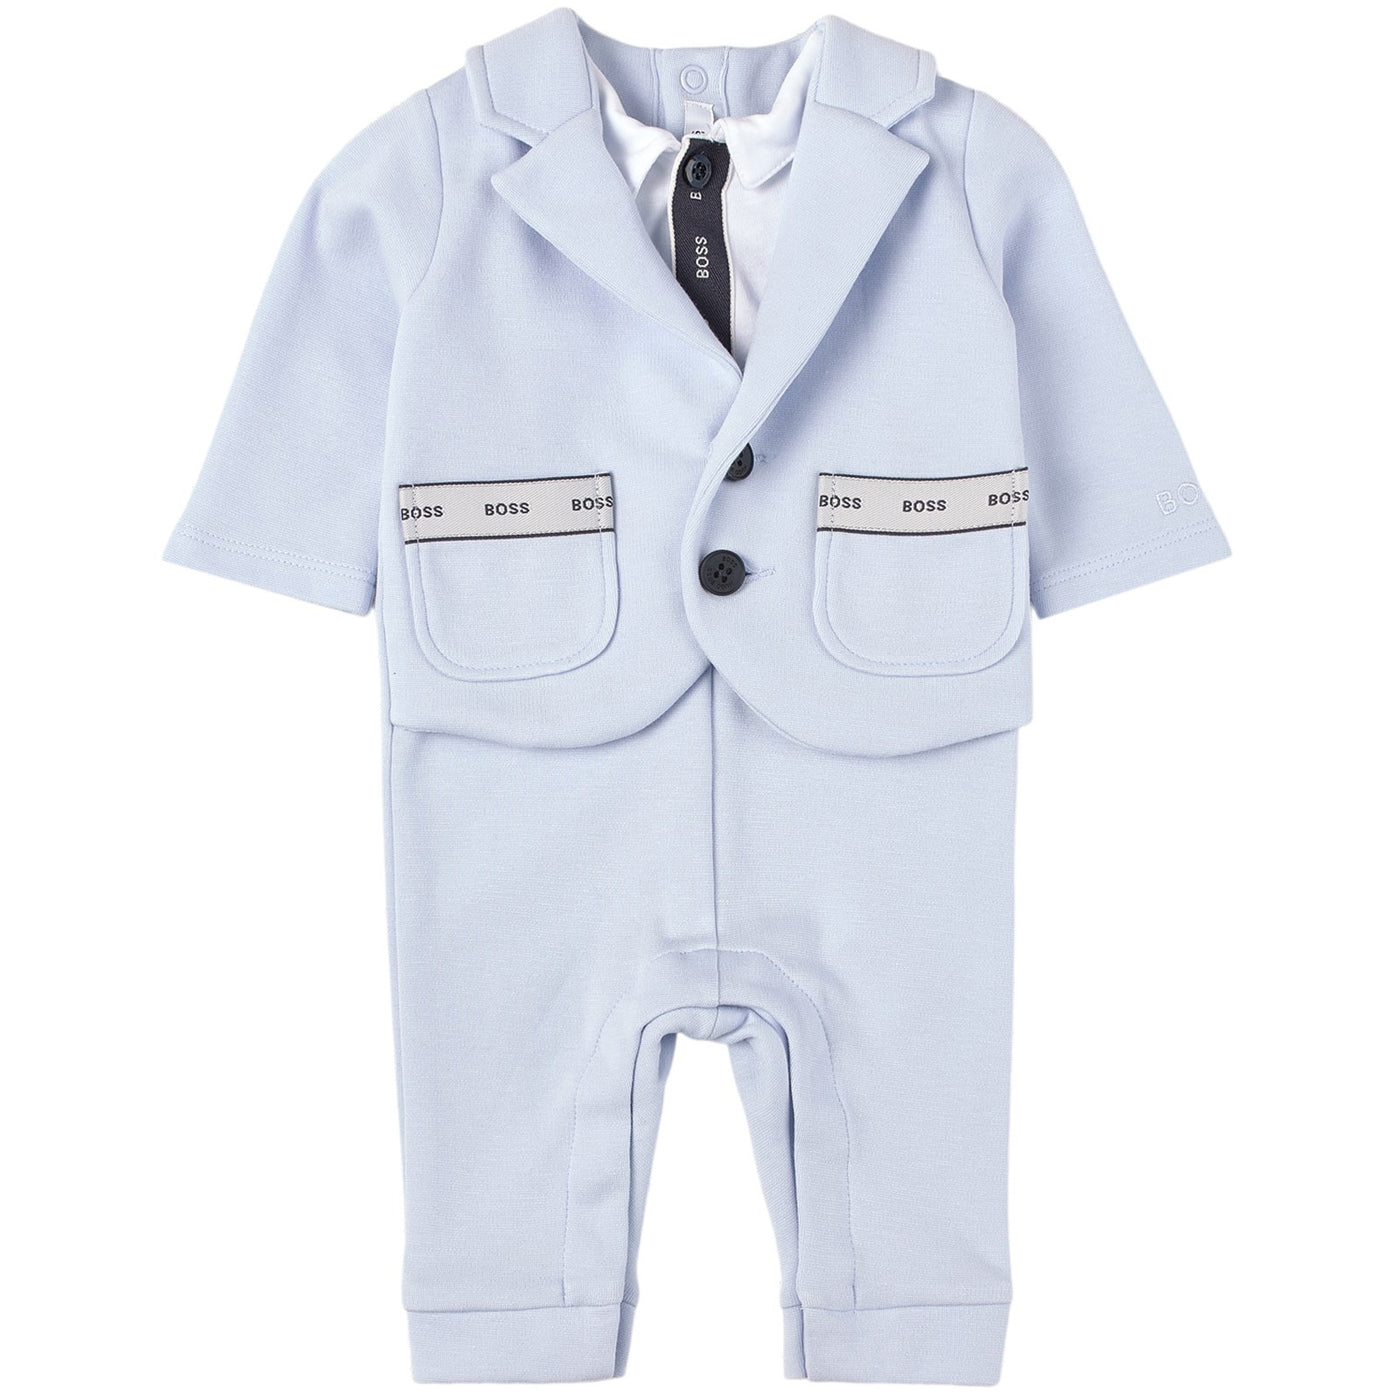 Hugo Boss Baby Onepiece suit (18M)